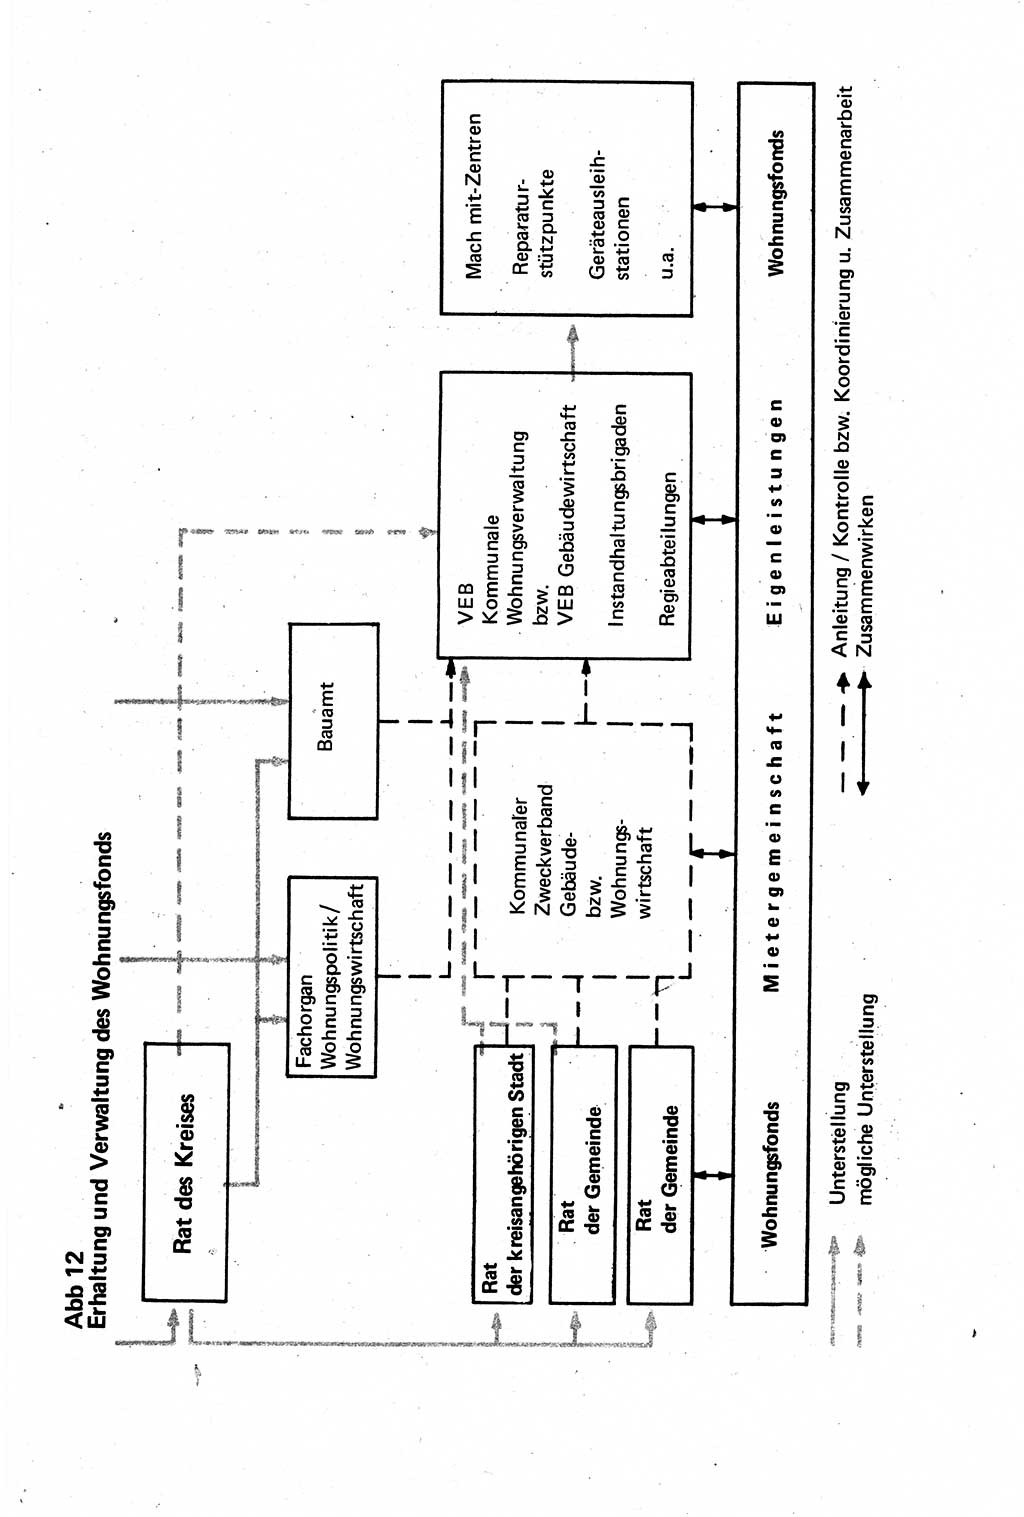 Verwaltungsrecht [Deutsche Demokratische Republik (DDR)], Lehrbuch 1979, Seite 413 (Verw.-R. DDR Lb. 1979, S. 413)